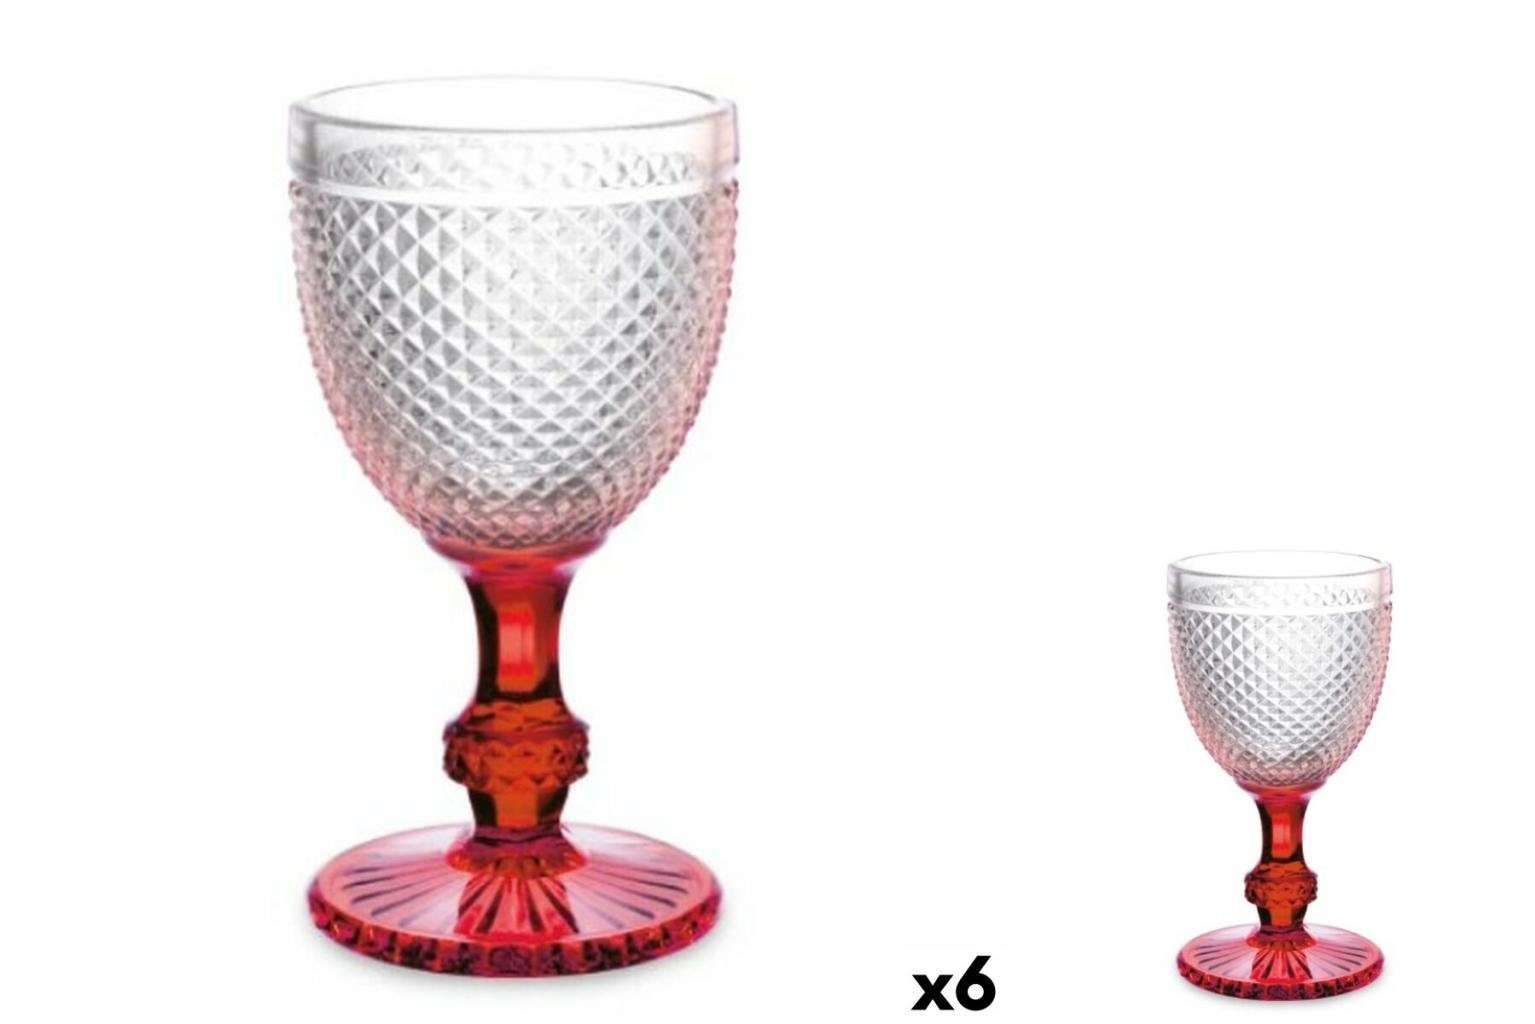 Vivalto Glas Weinglas Diamant Rot Durchsichtig Glas 330 ml 6 Stück, Glas